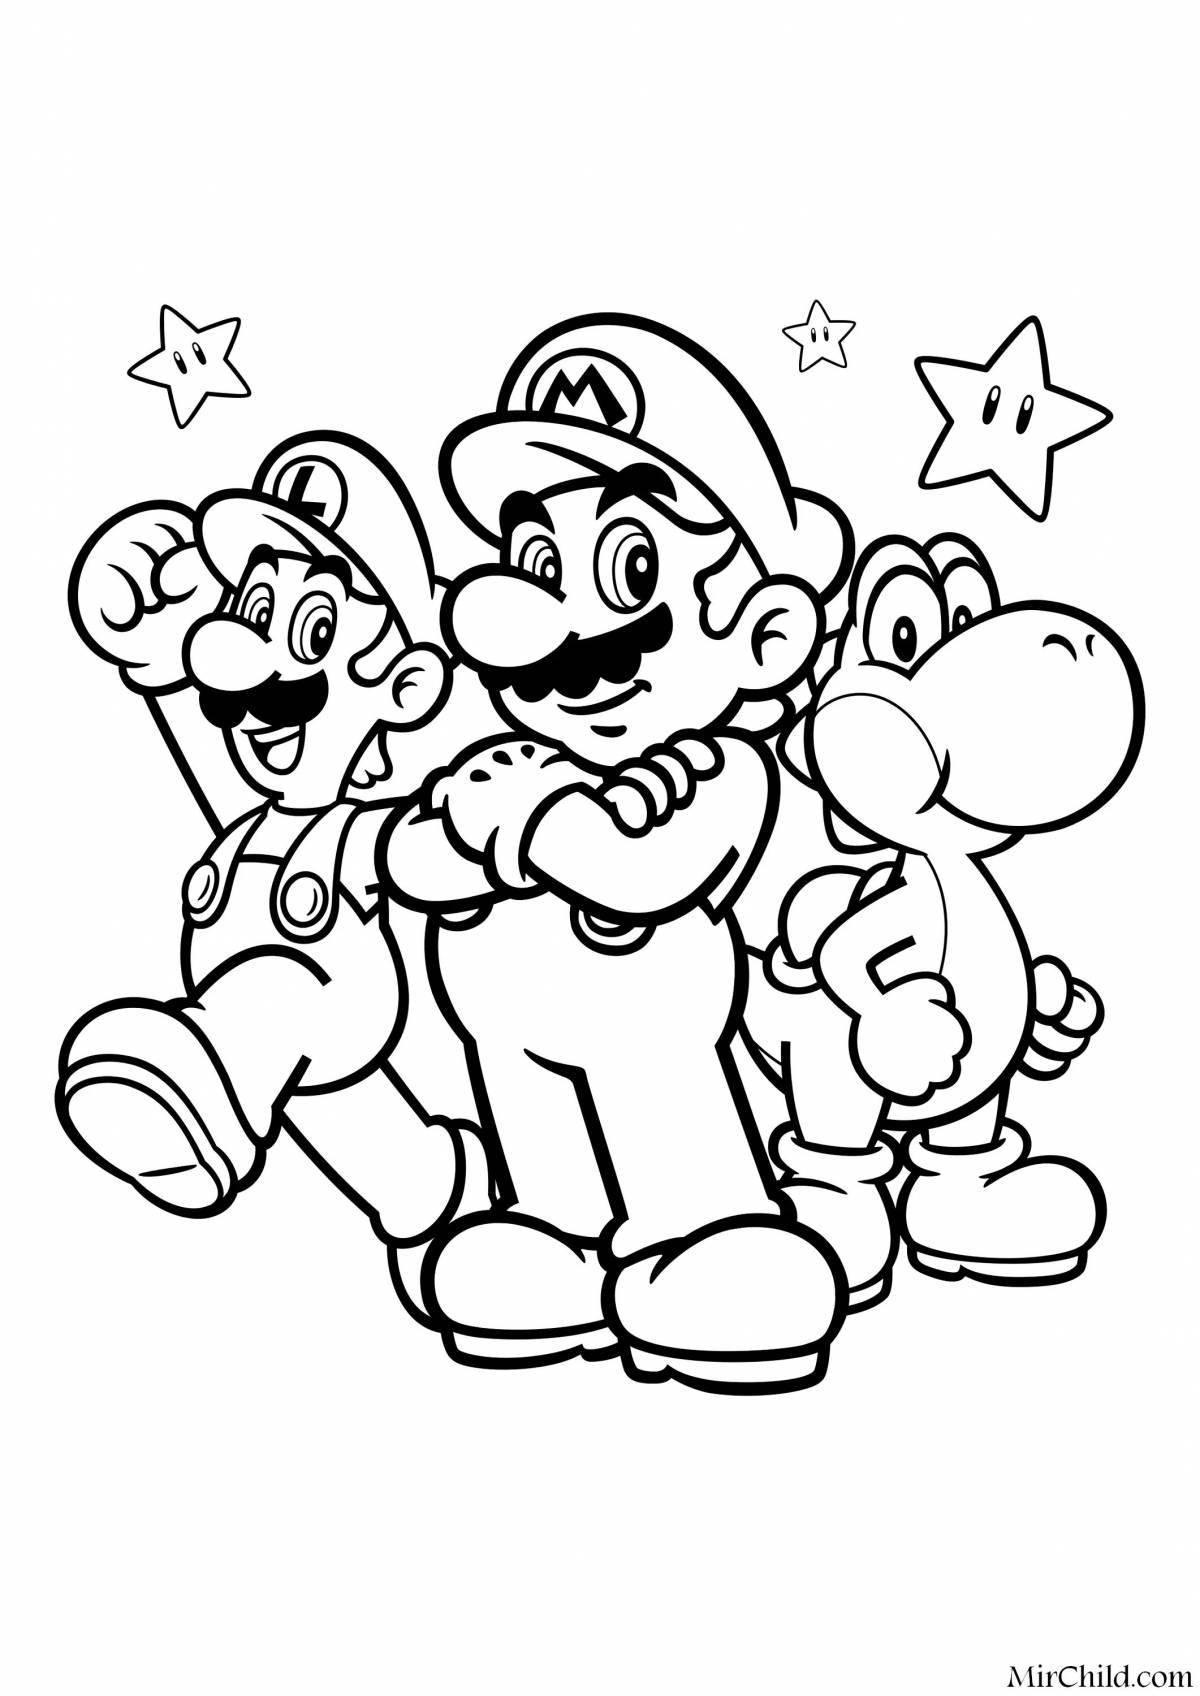 Luigi bold coloring